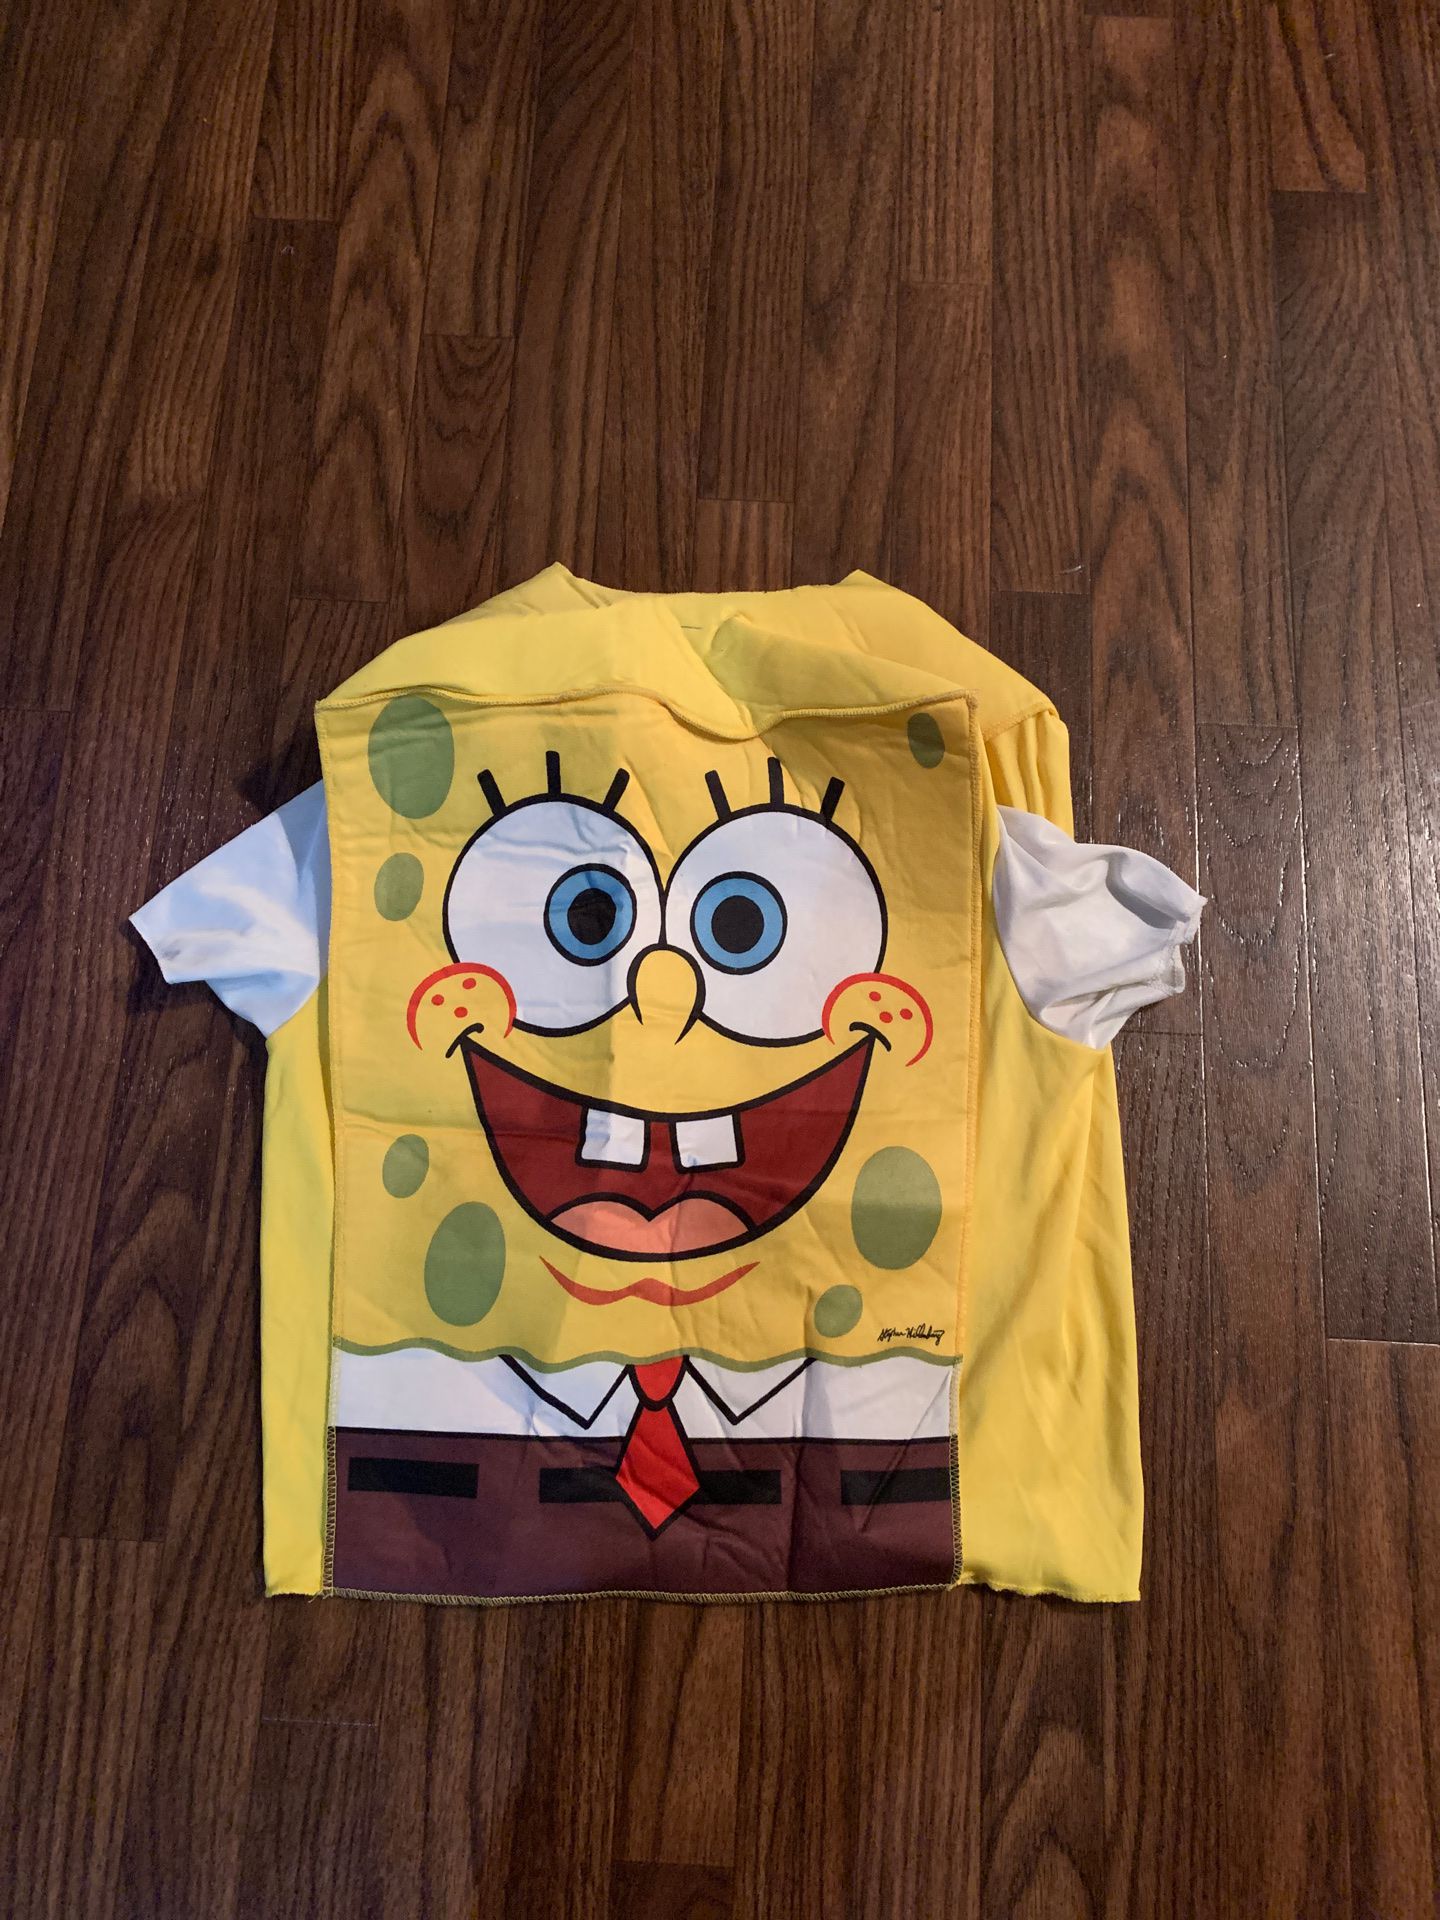 SpongeBob costume kids size 4/6